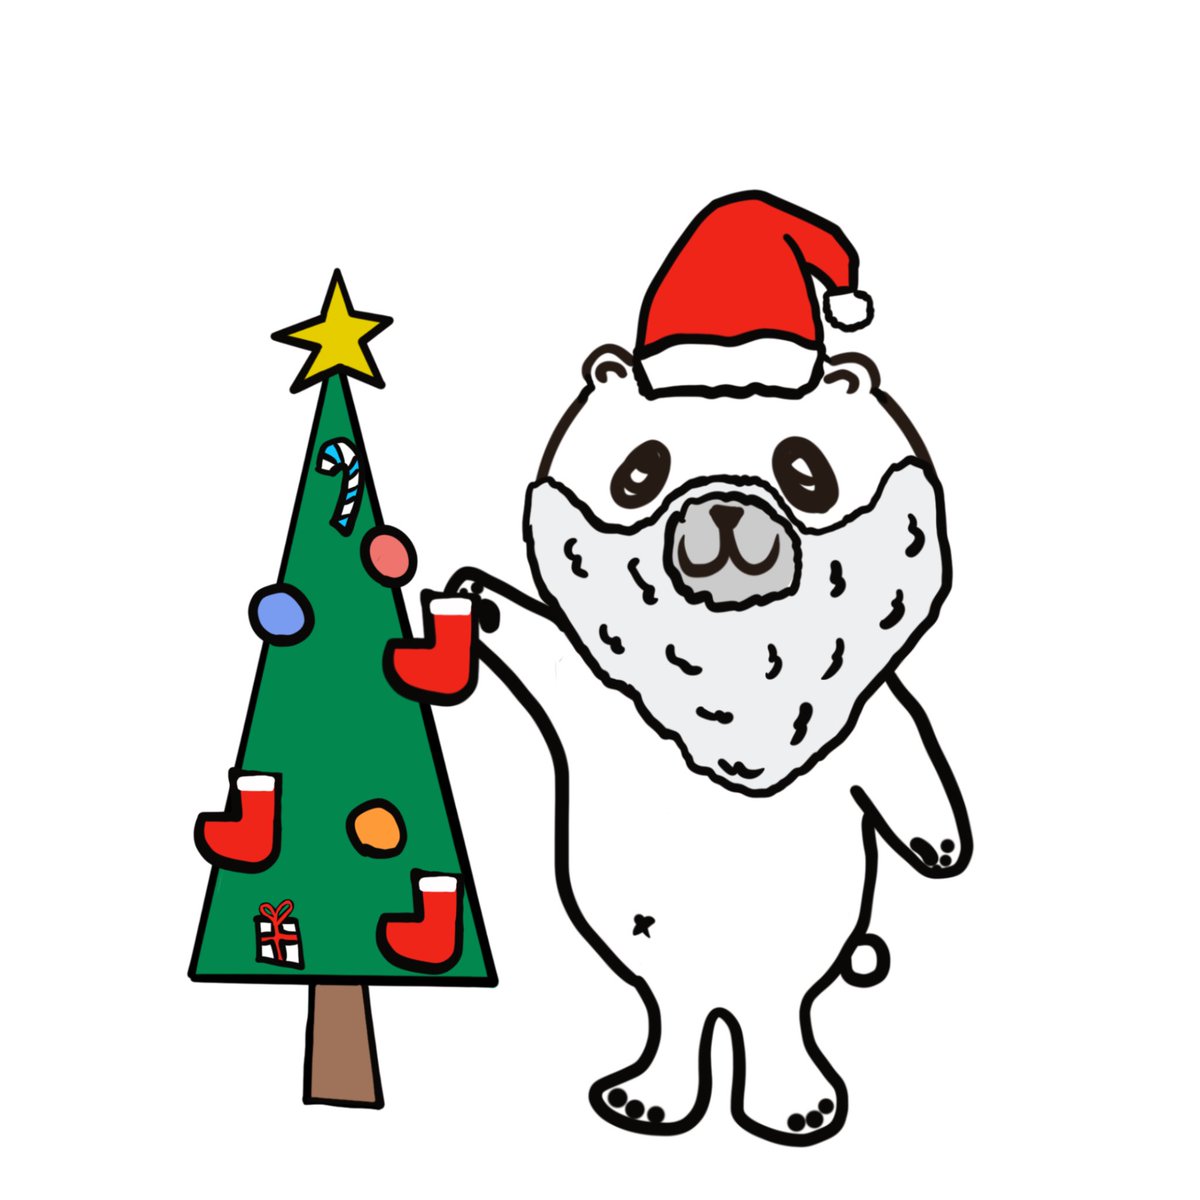 Happy Xmas🎄🐻‍❄️ #しろくまゴロー #MerryXmas #HappyXmas #メリークリスマス #ChristmasTree #クリスマスツリー #しろくま #シロクマ #polarbear #artwork #illustration #drawing #イラスト #ゆるイラスト